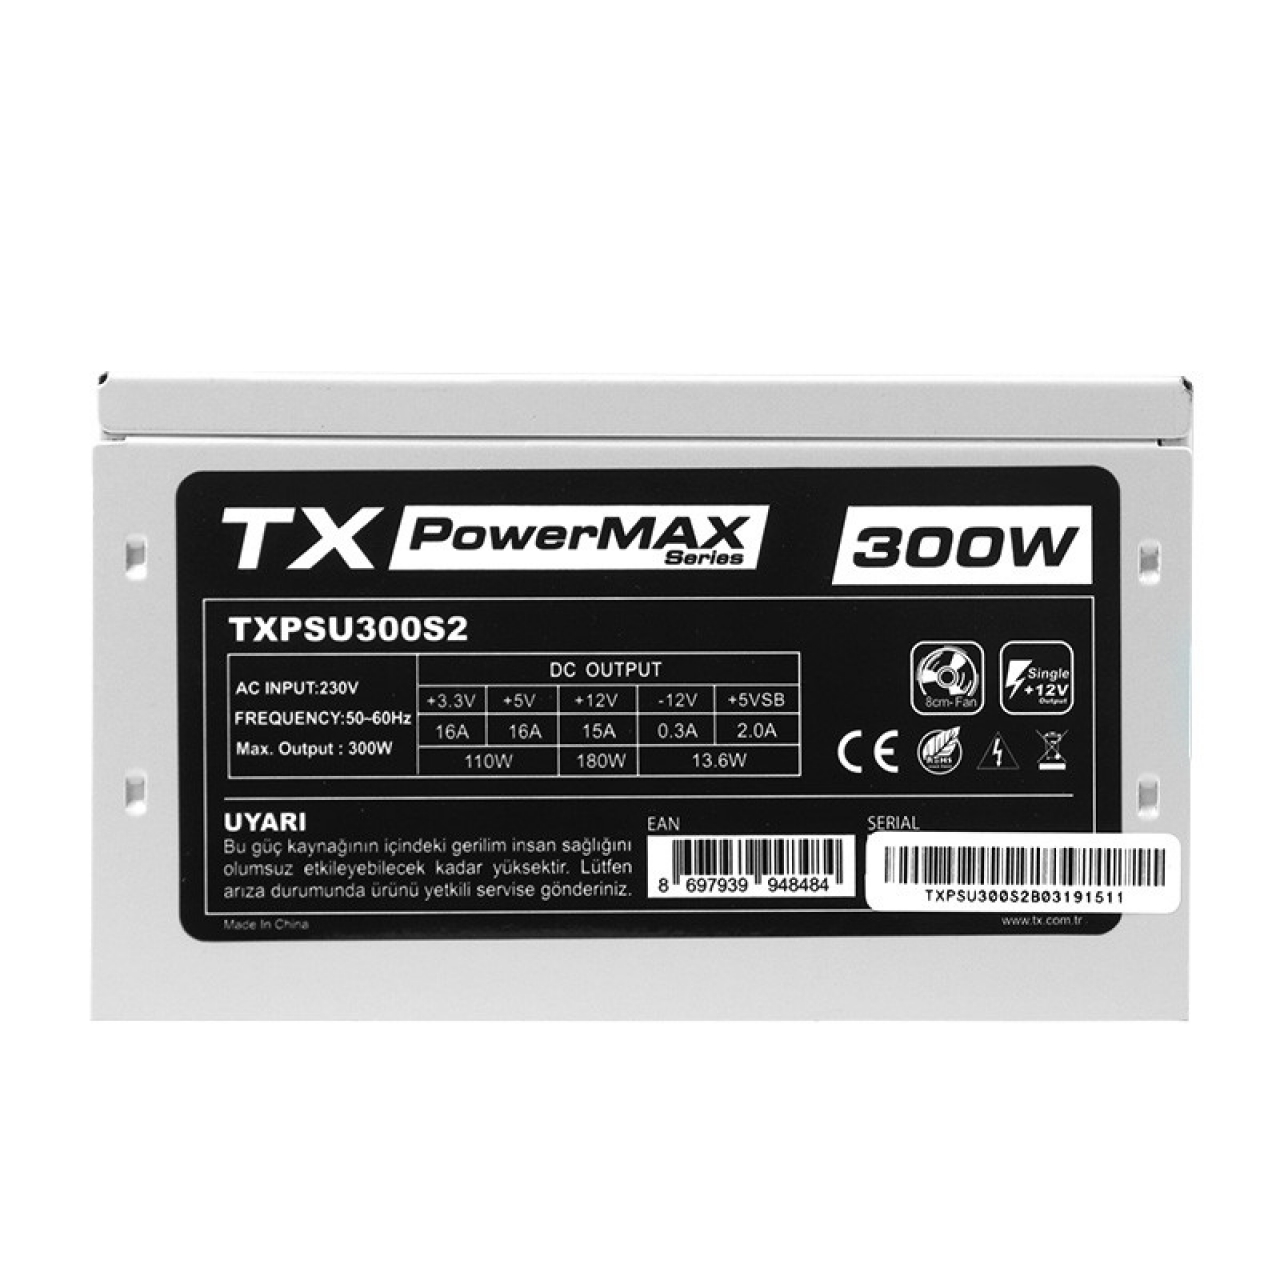 TX POWERMAX 300W TXPSU300C1 12CM FAN POWER SUPPLY